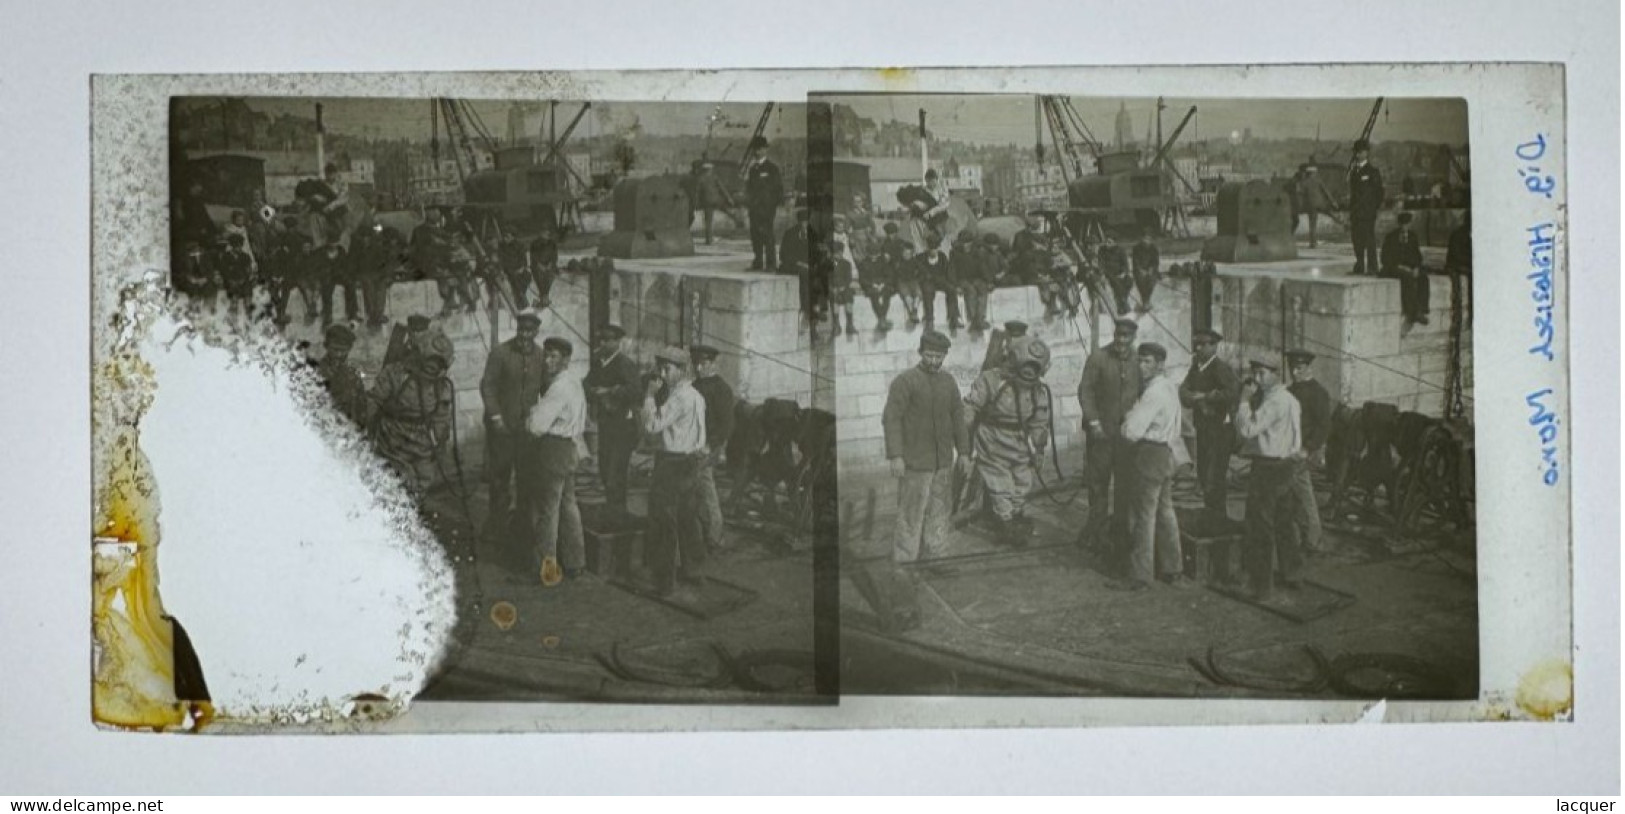 Photo Rare D'un Plongeur Dans Une Vieille Combinaison De Plongée, Boulogne Sur Mer C. 1900 - Stereoscopic